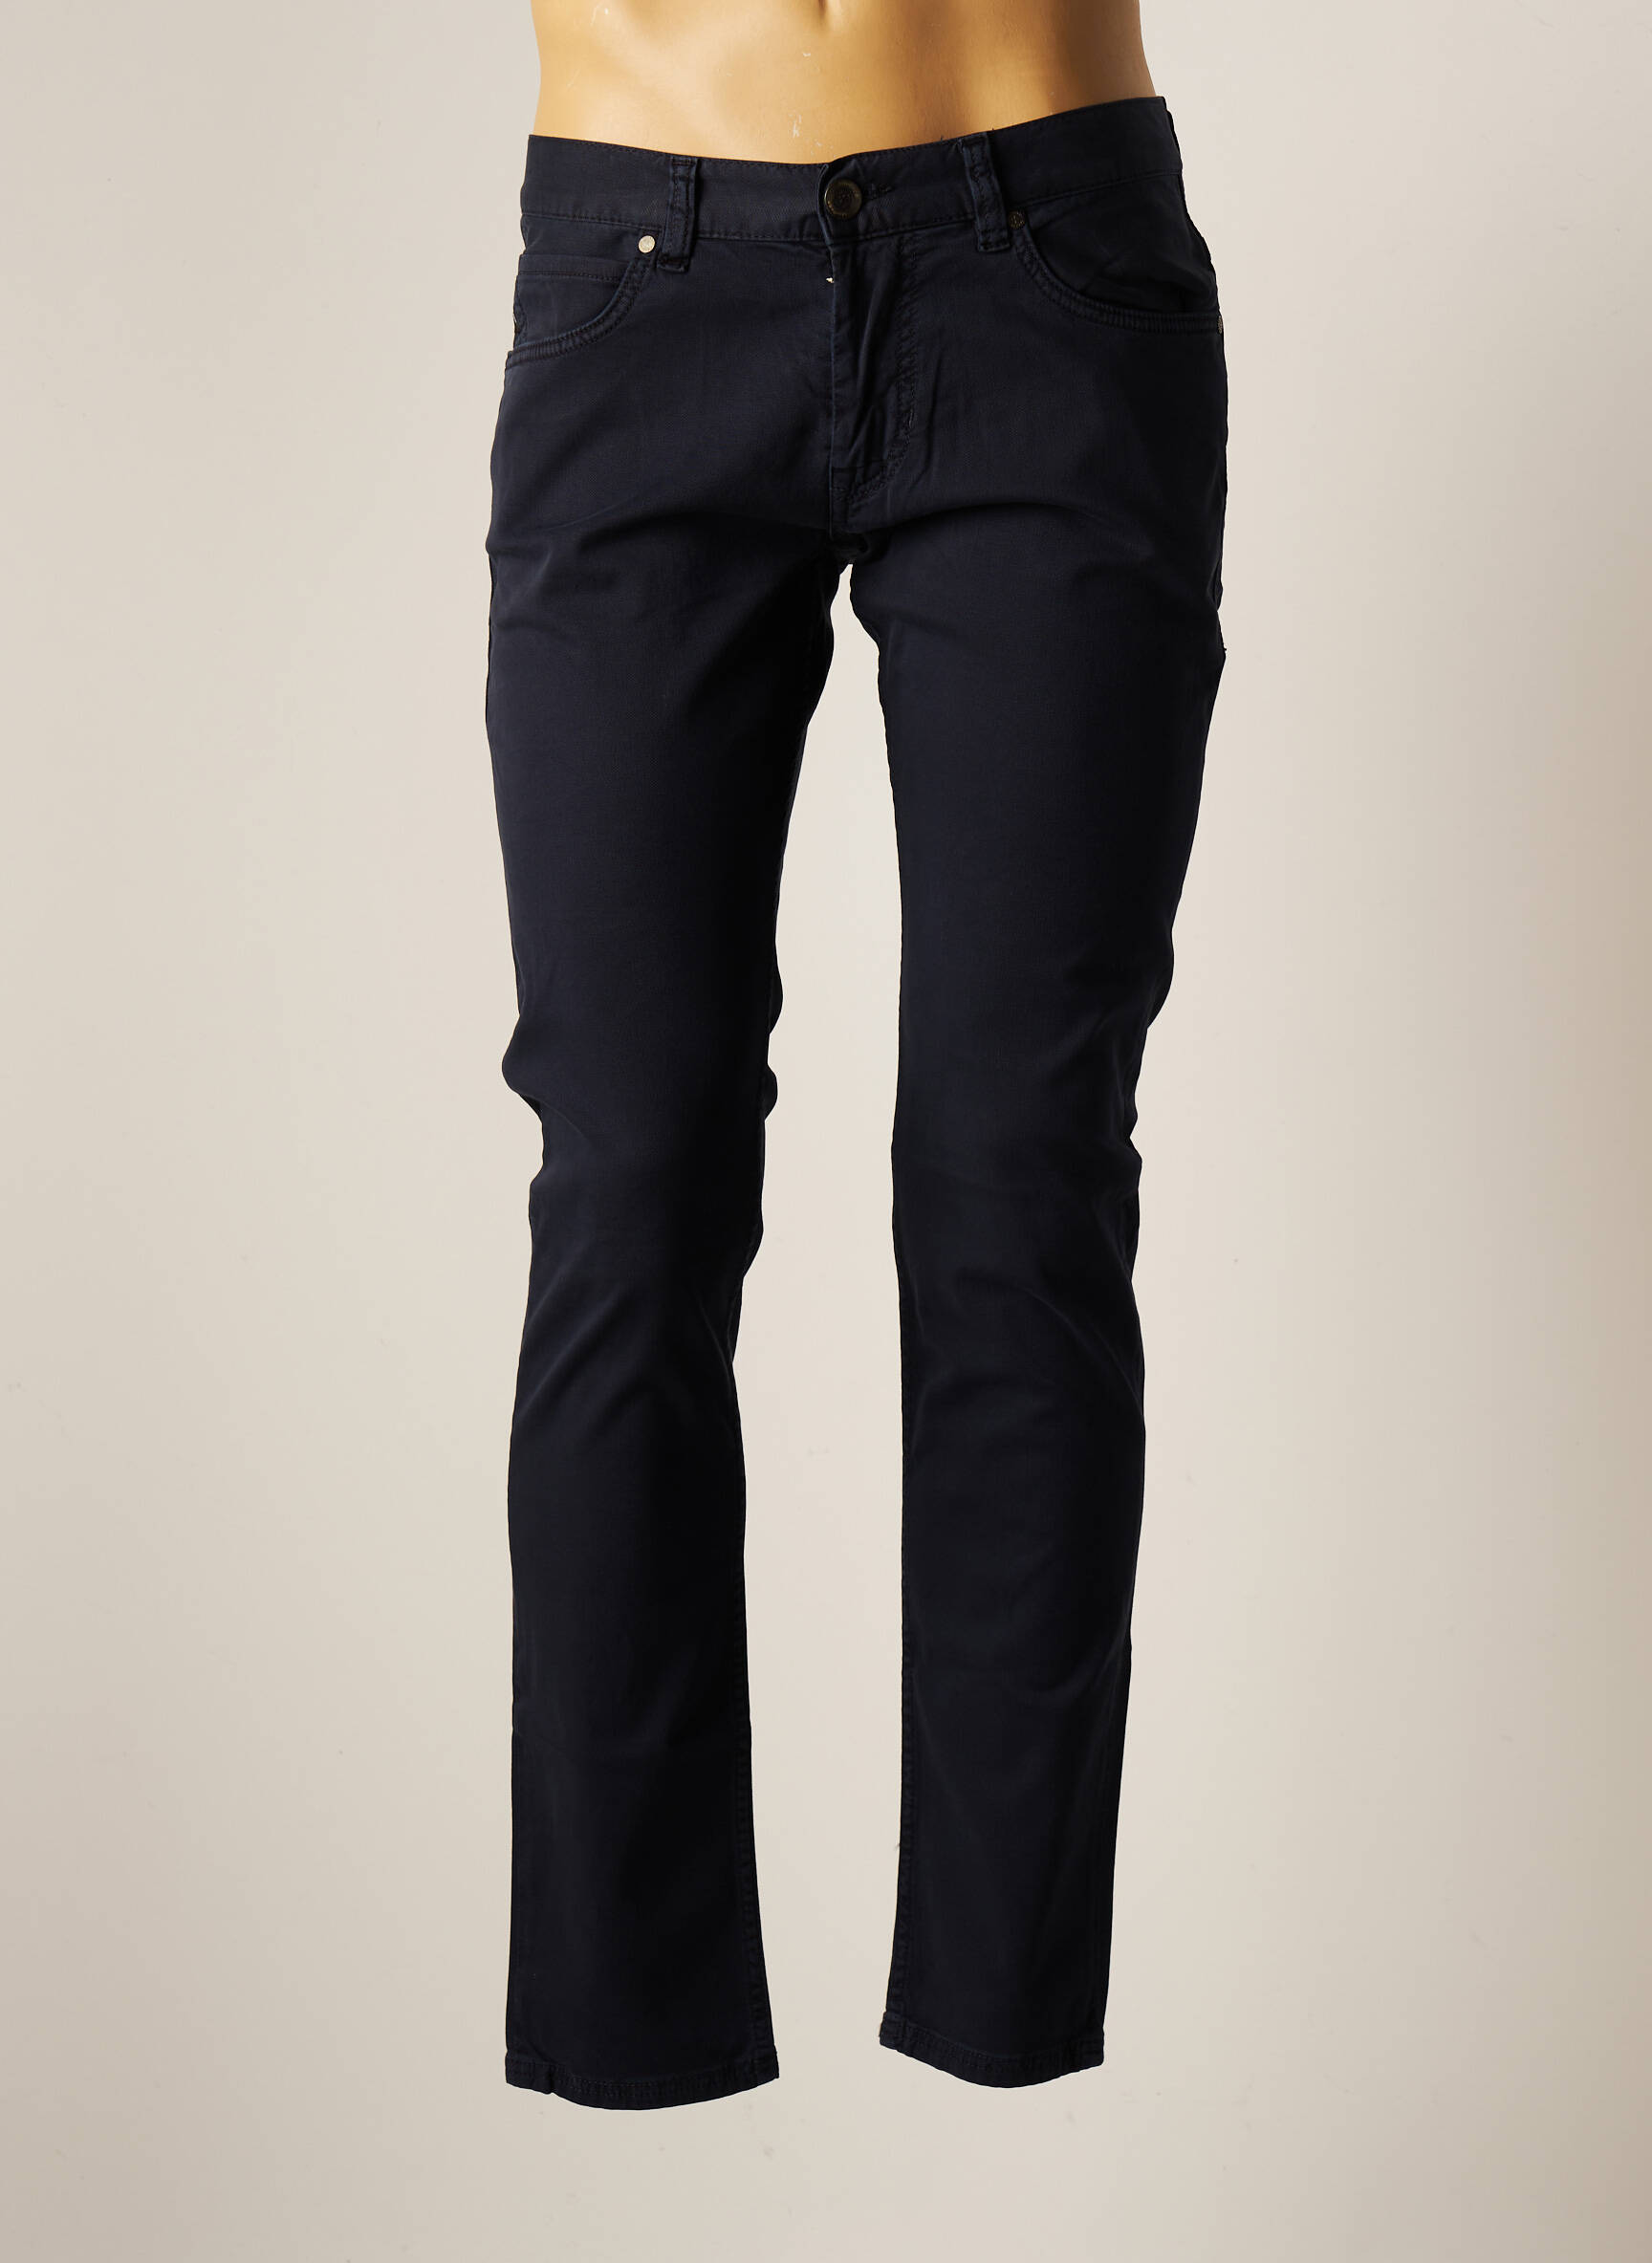 Pantalon Slim Homme- Couleur Bleu Nuit